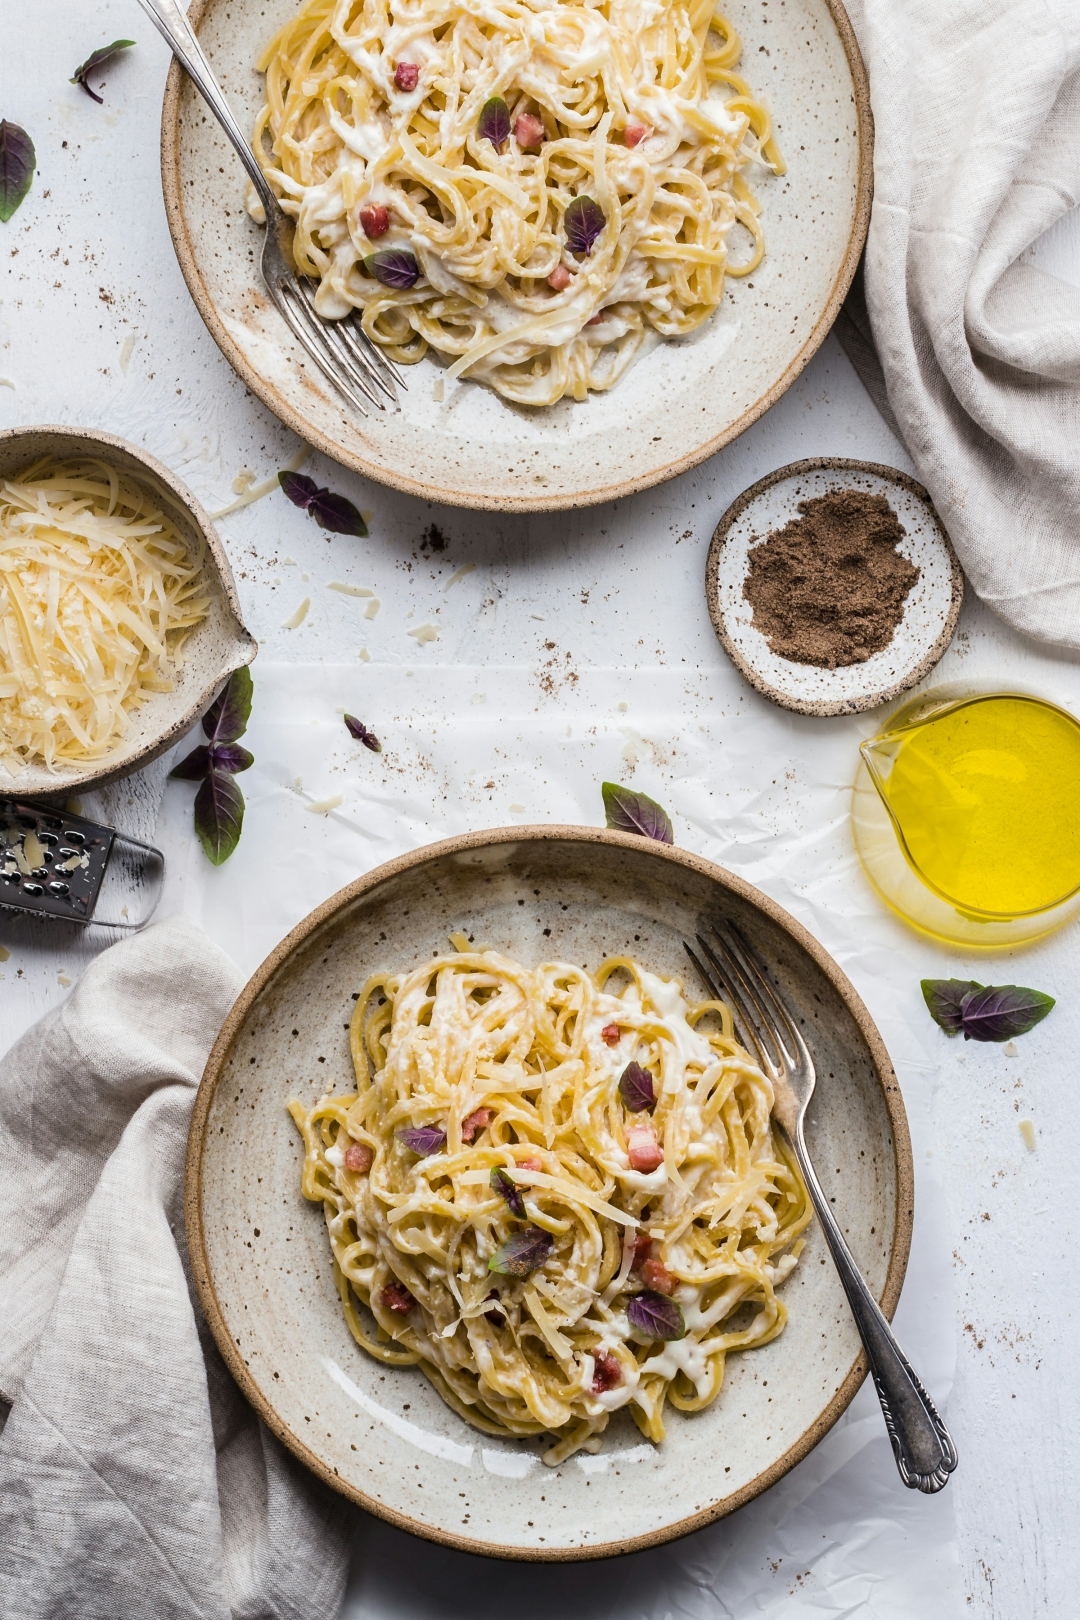 Cacio e pepe: Danes pripravljamo ta preprost in okusen italijanski recept